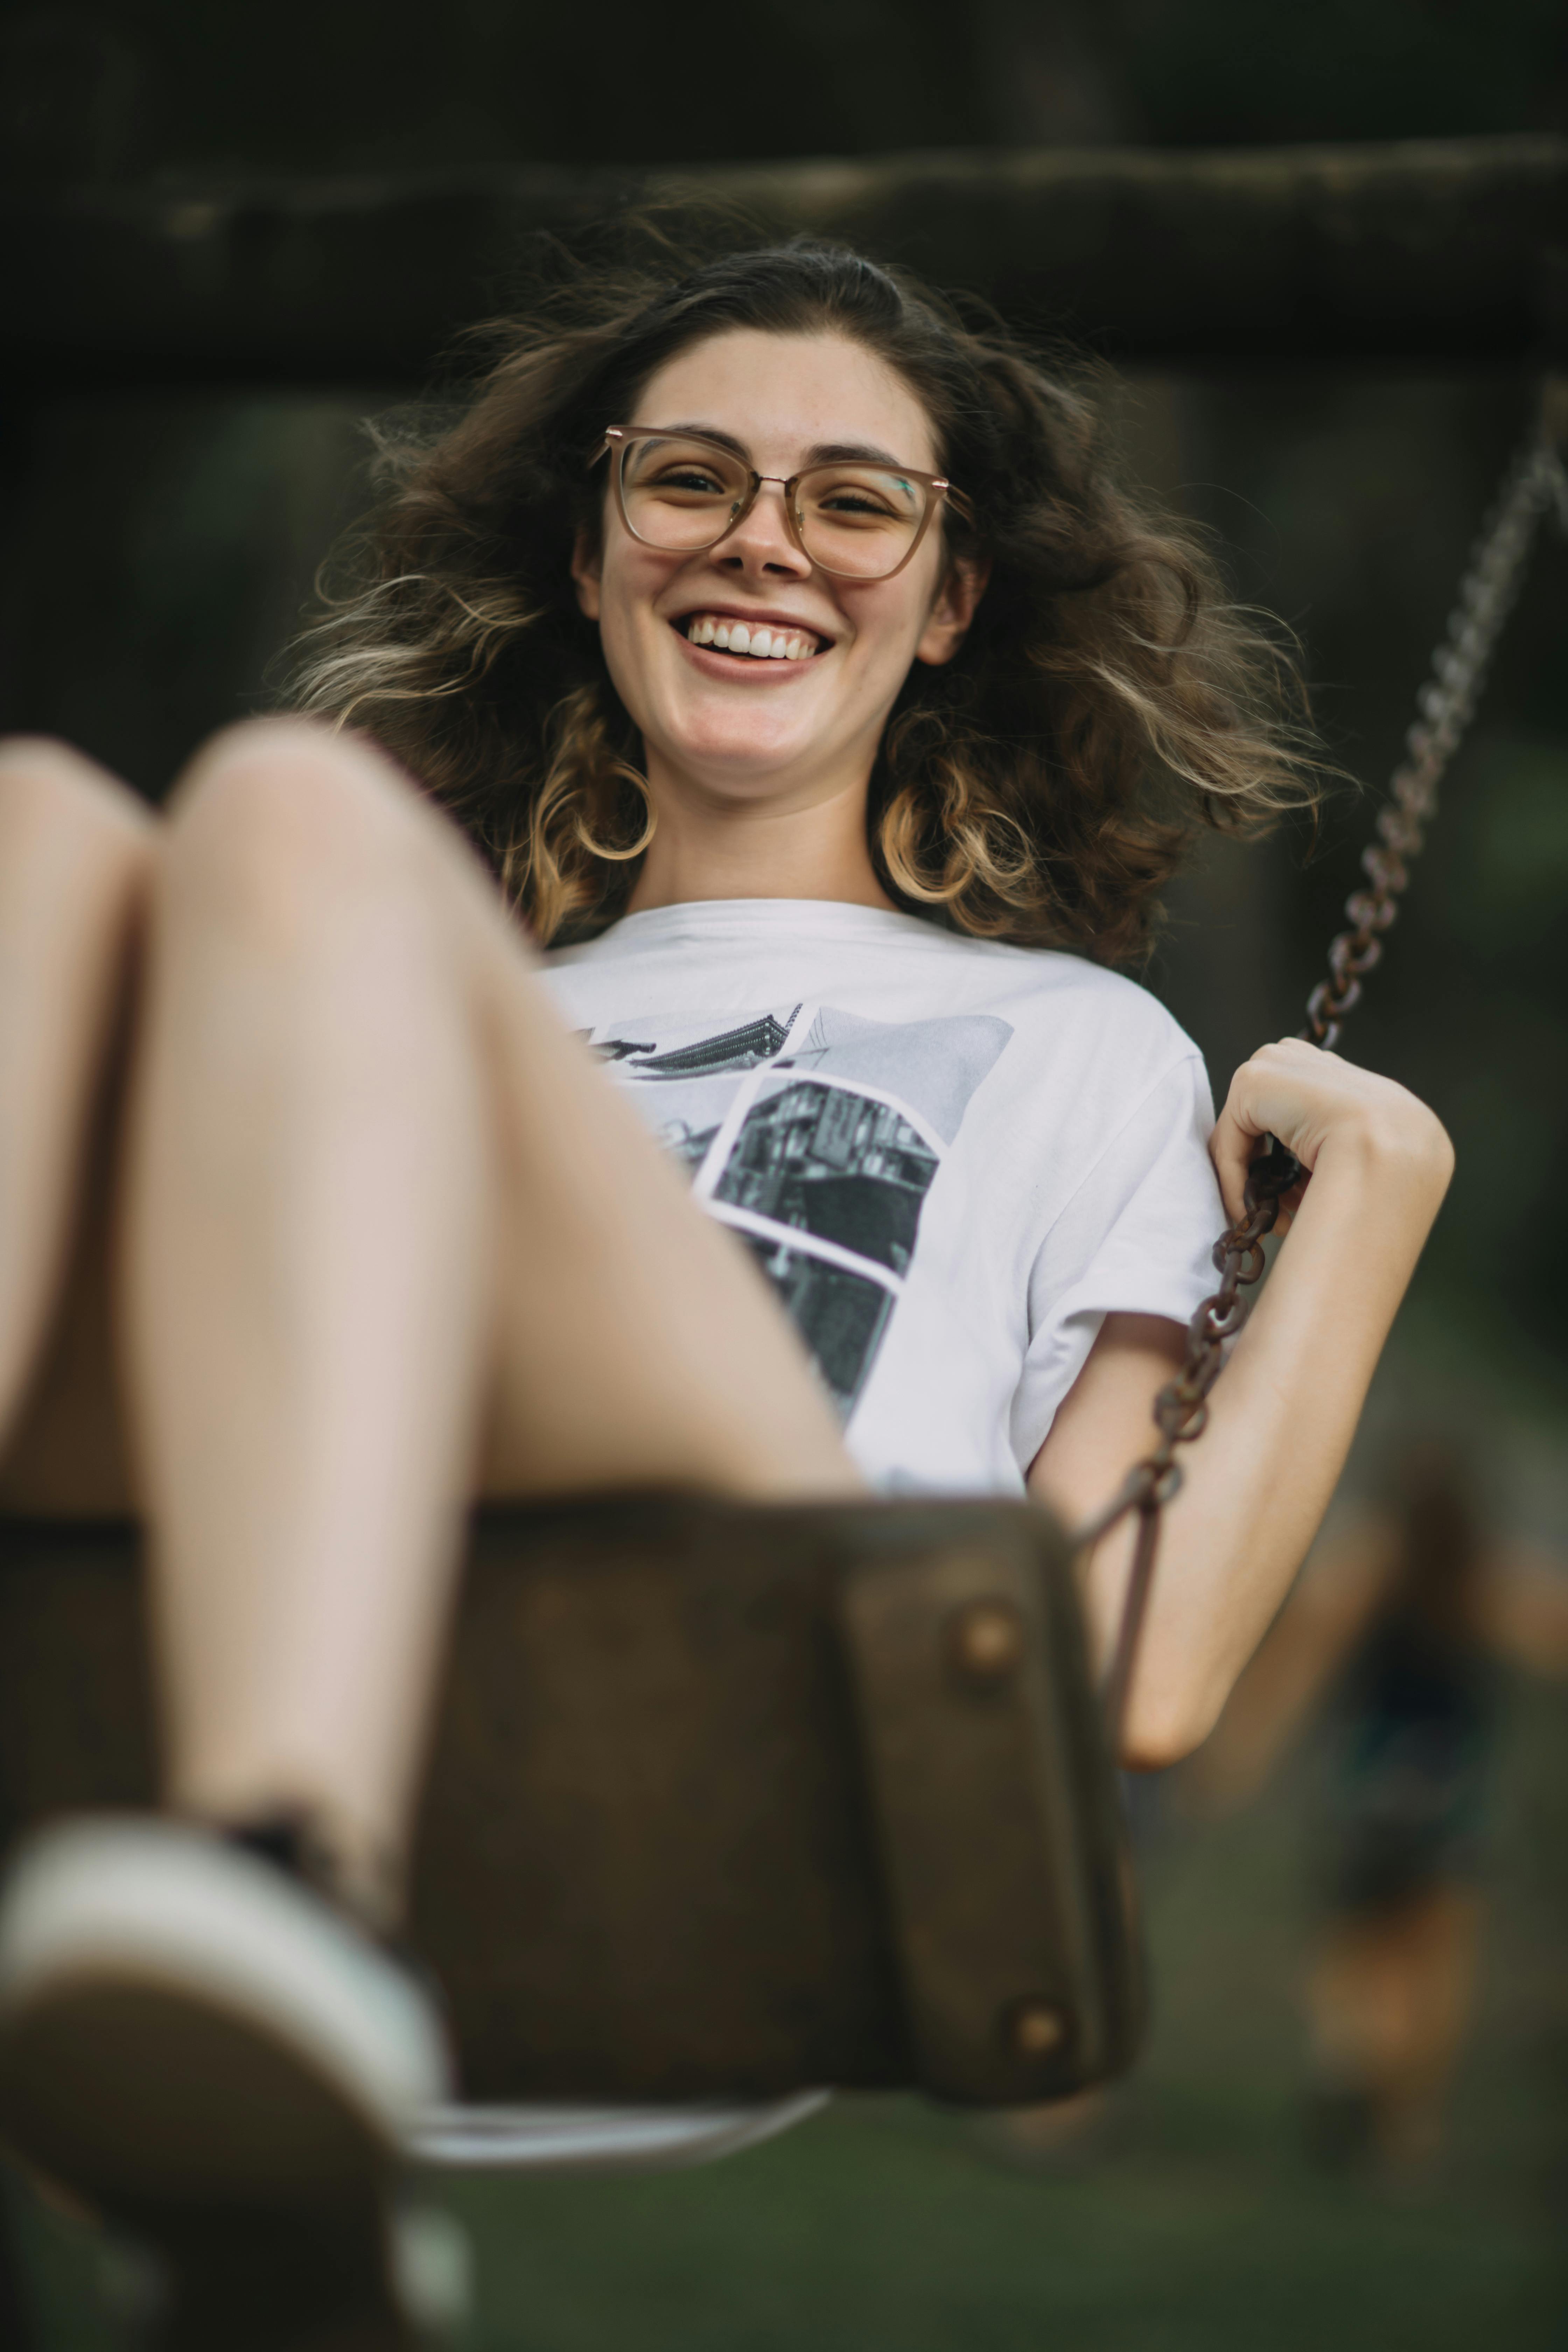 Teenage girl on a swing | Source: Pexels